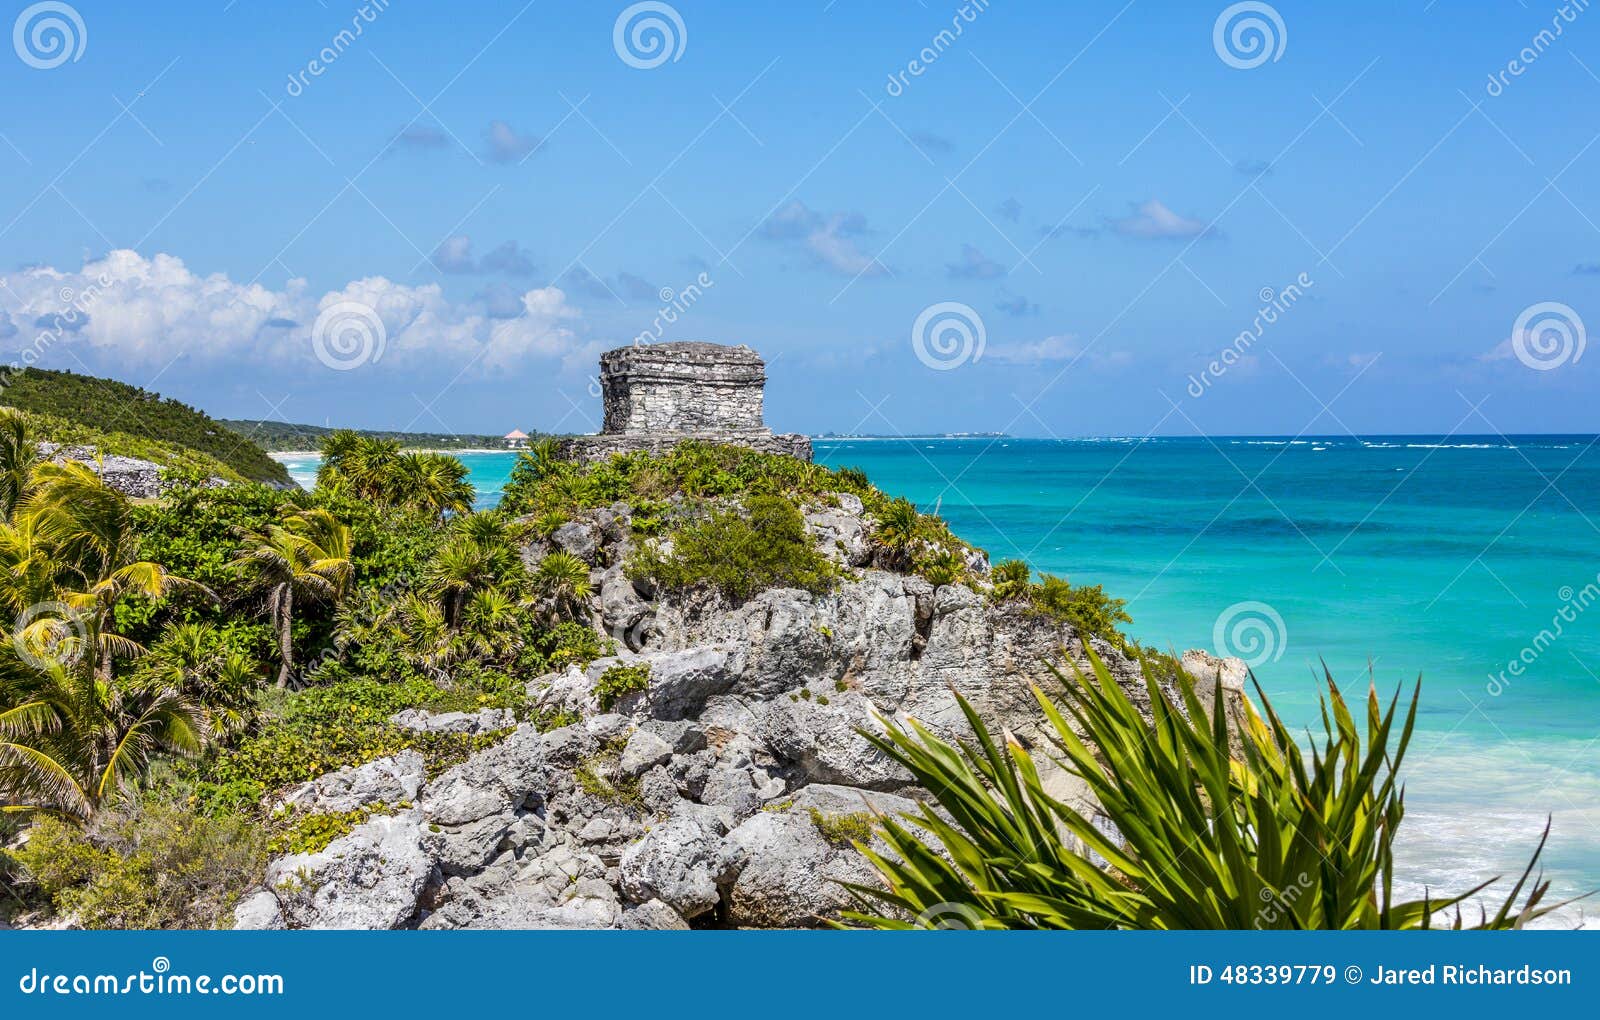 mayan ruin at tulum near playa del carmen, mexico